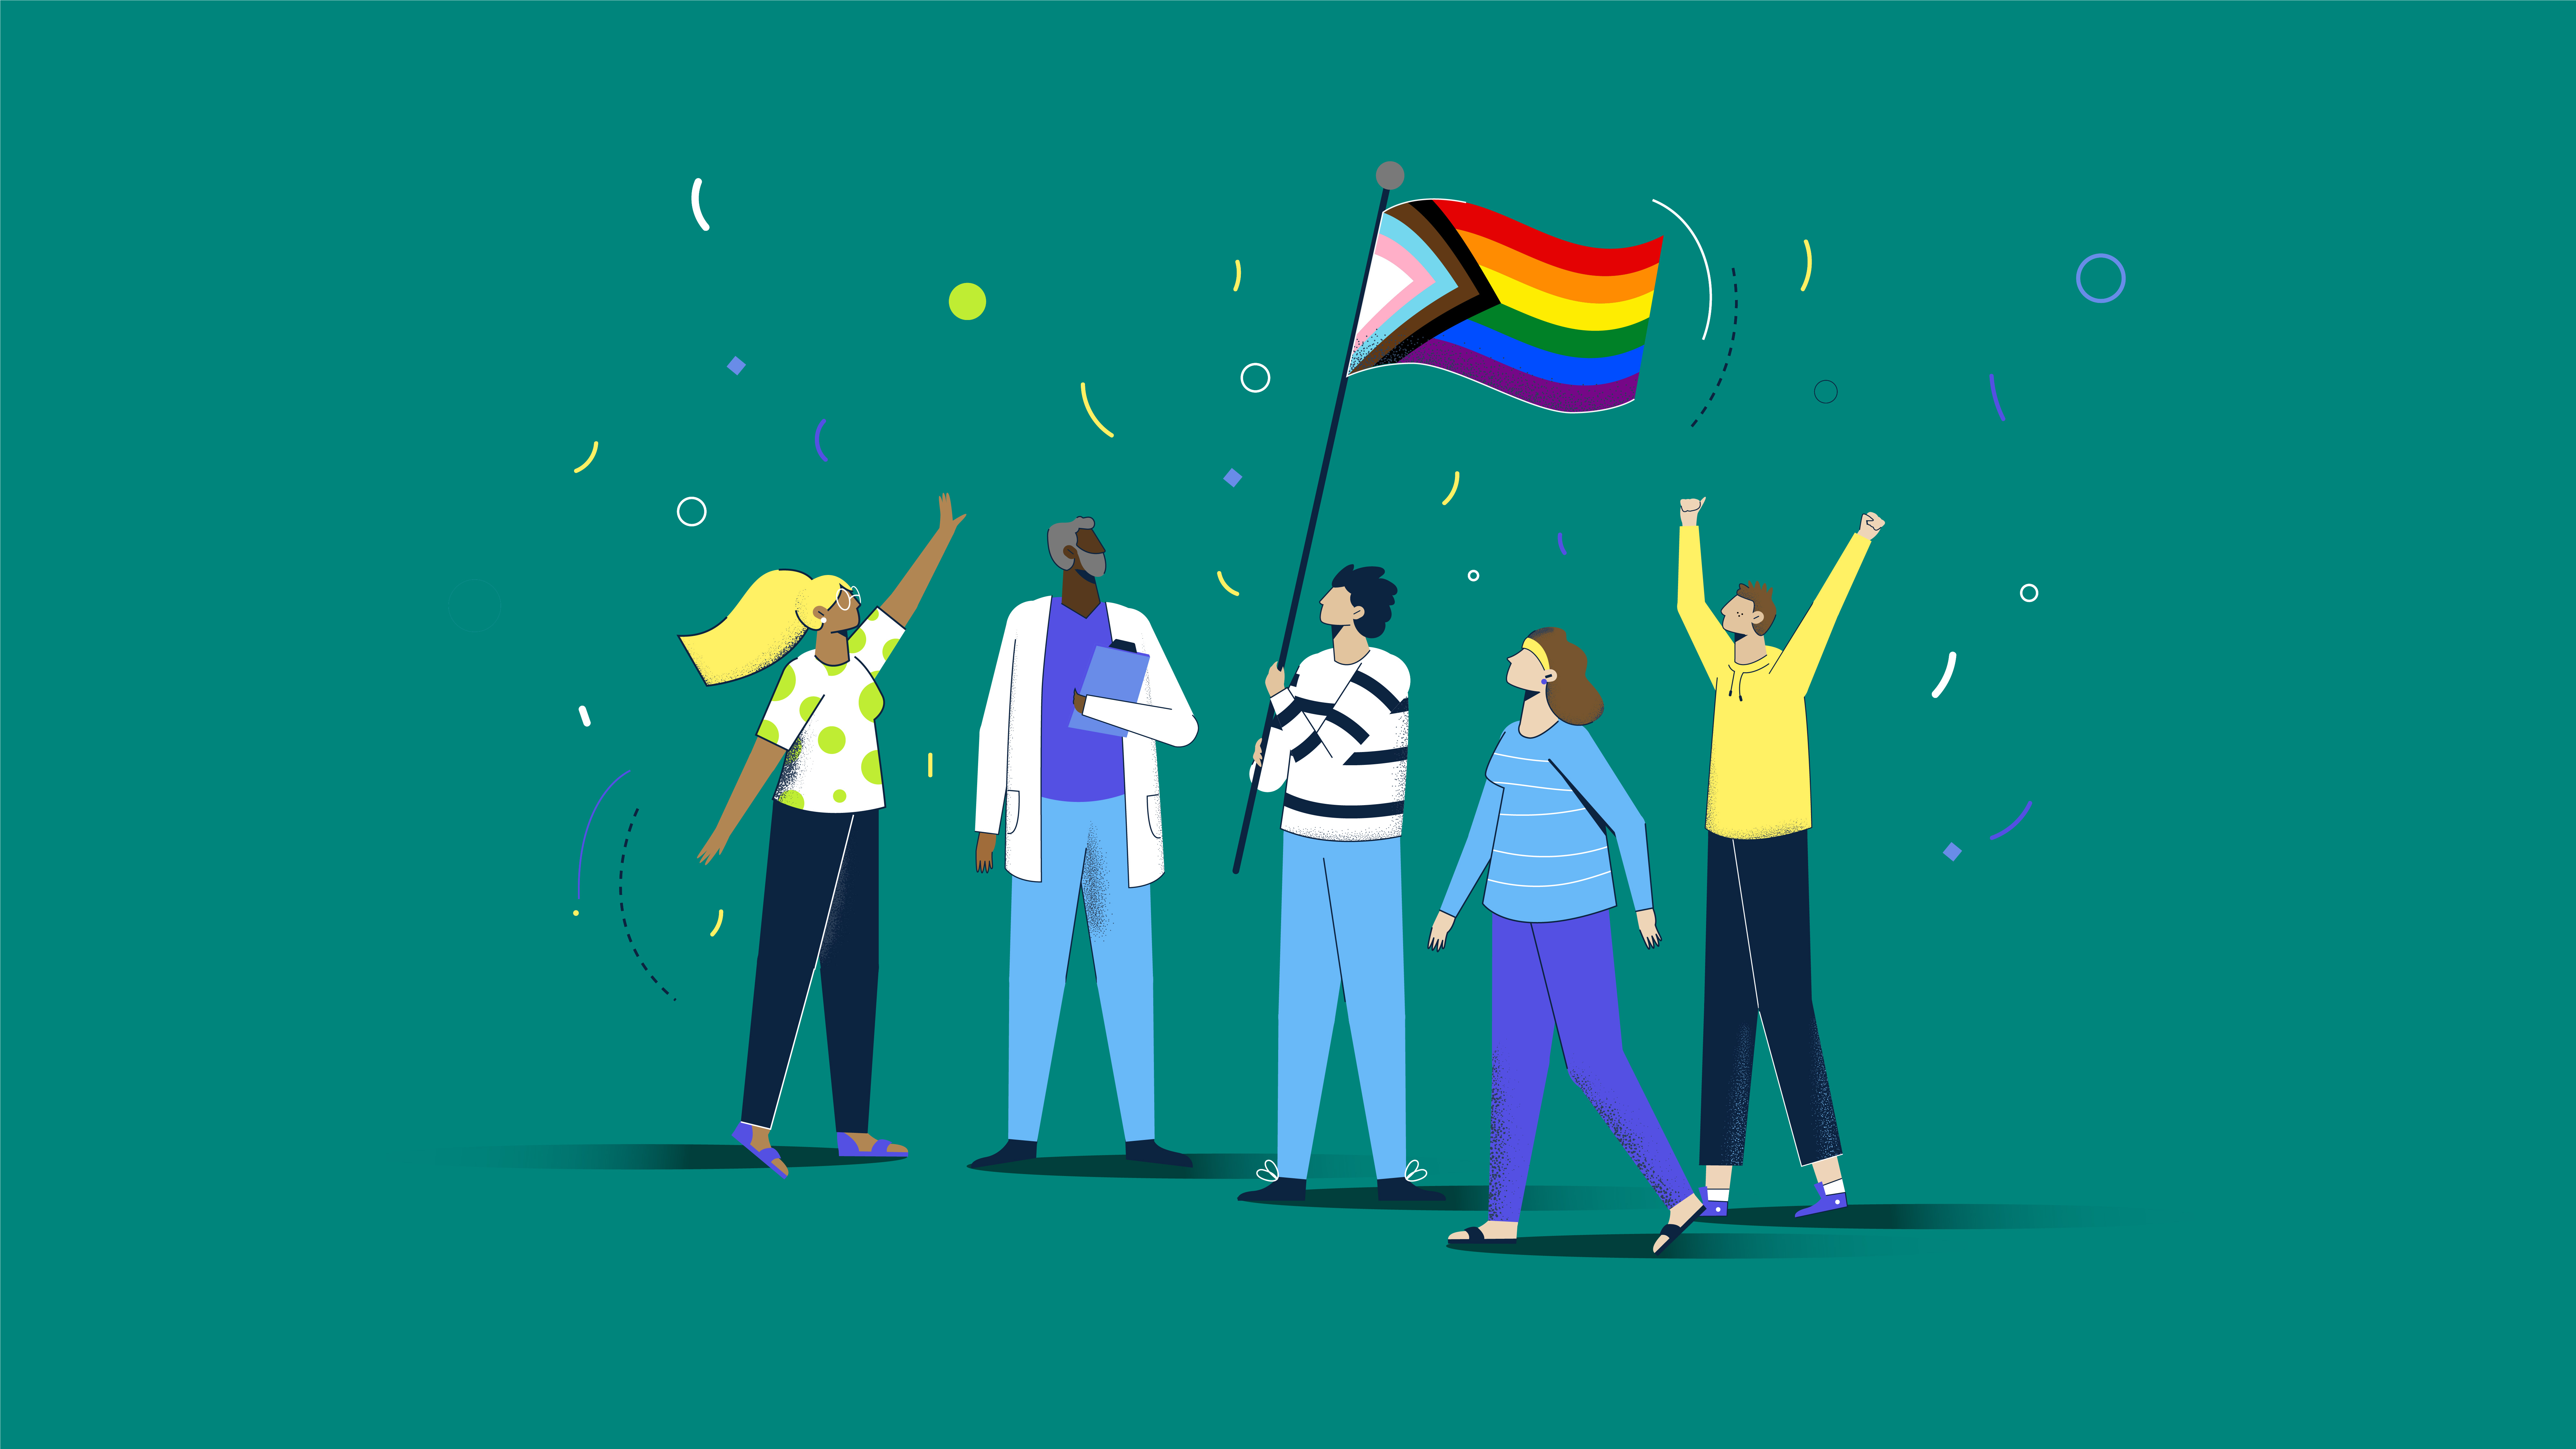 Eine Illustration zum Thema CSD - Unser Einsatz für Equality geht weiter, auf der Menschen in einer Gruppe zusammenstehen und die Pride Flagge halten.